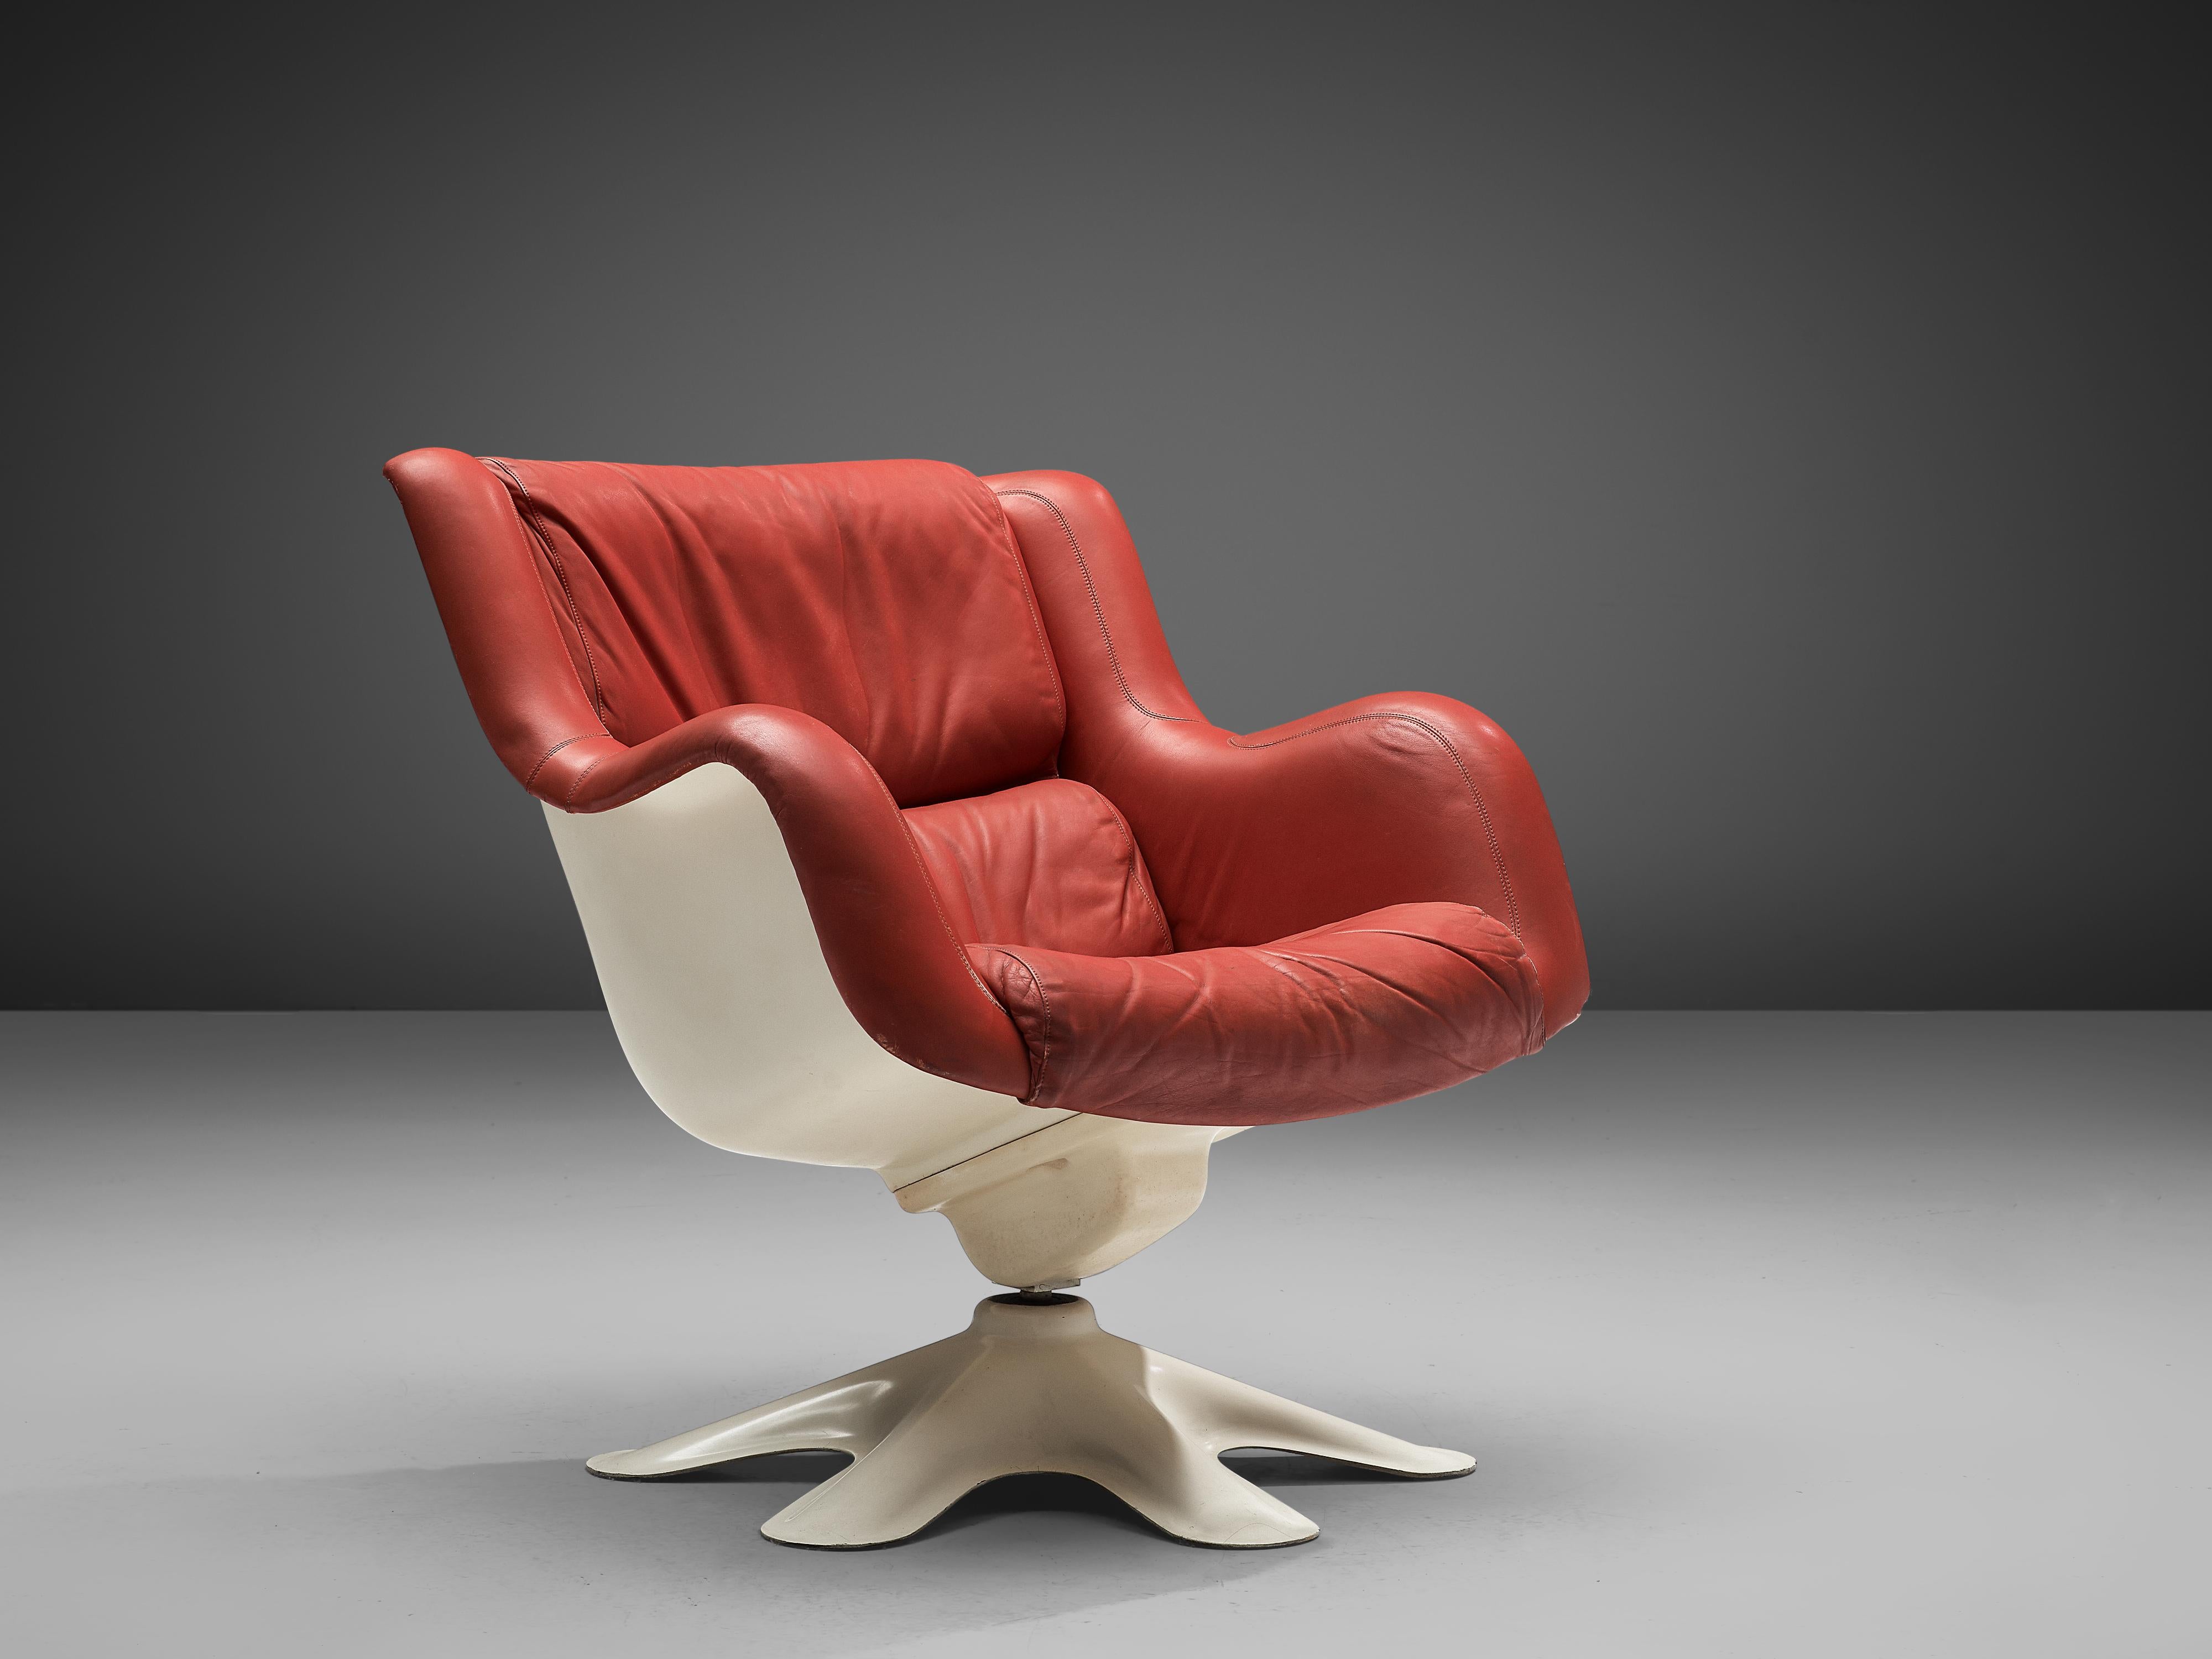 Yrjö Kukkapuro pour Haimi, chaise longue 'Karuselli', cuir, acier chromé, fibre de verre, Finlande, design 1965

Chaise longue de forme organique par le designer finlandais Yrjö Kukkapuro. Cette chaise est composée d'une coque en fibre de verre